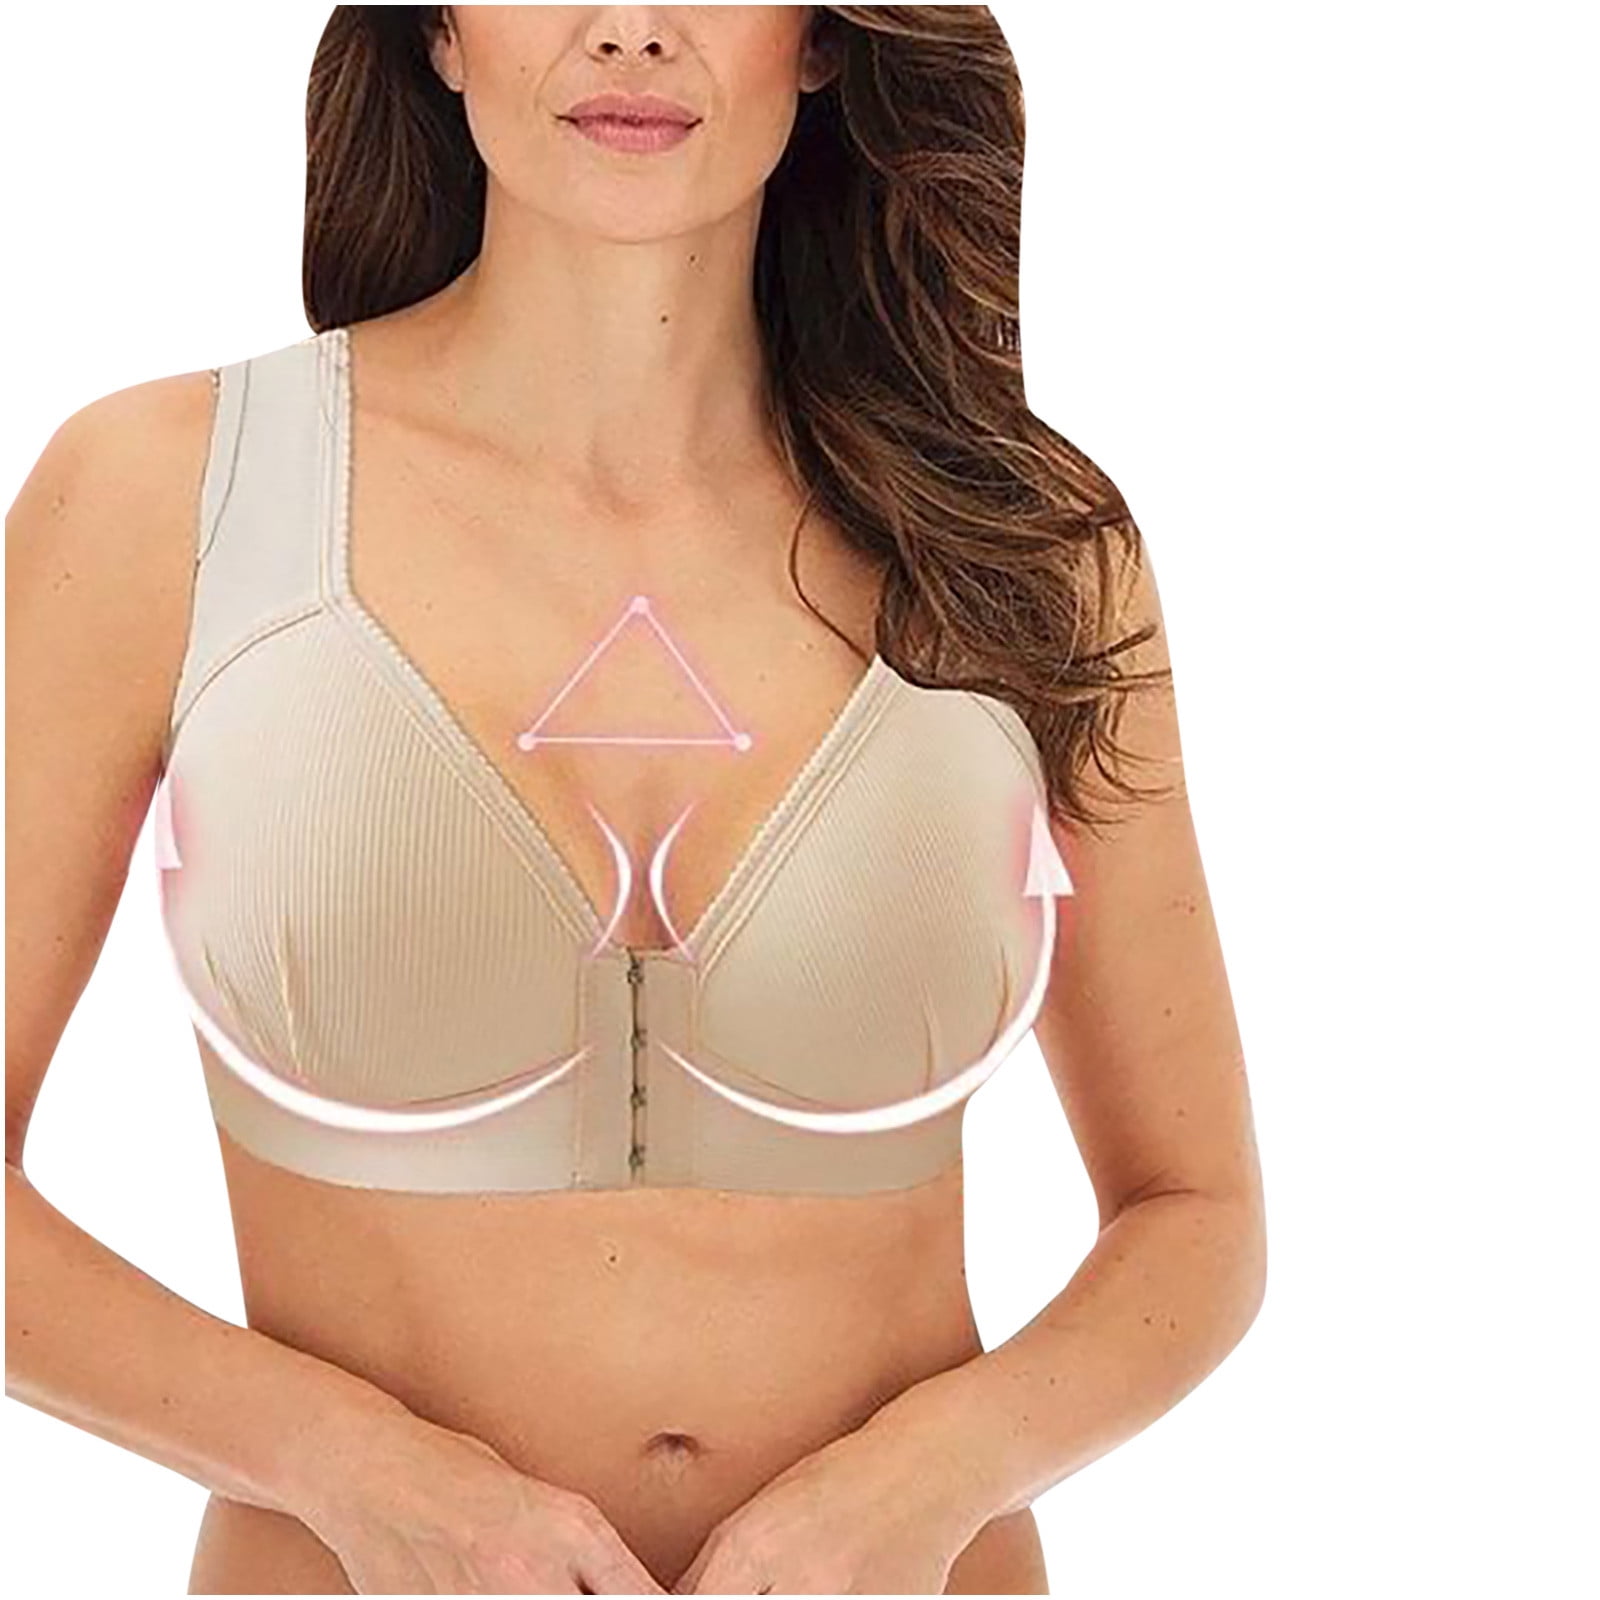  Womens Minimizer Bra Plus Size Underwire Smooth